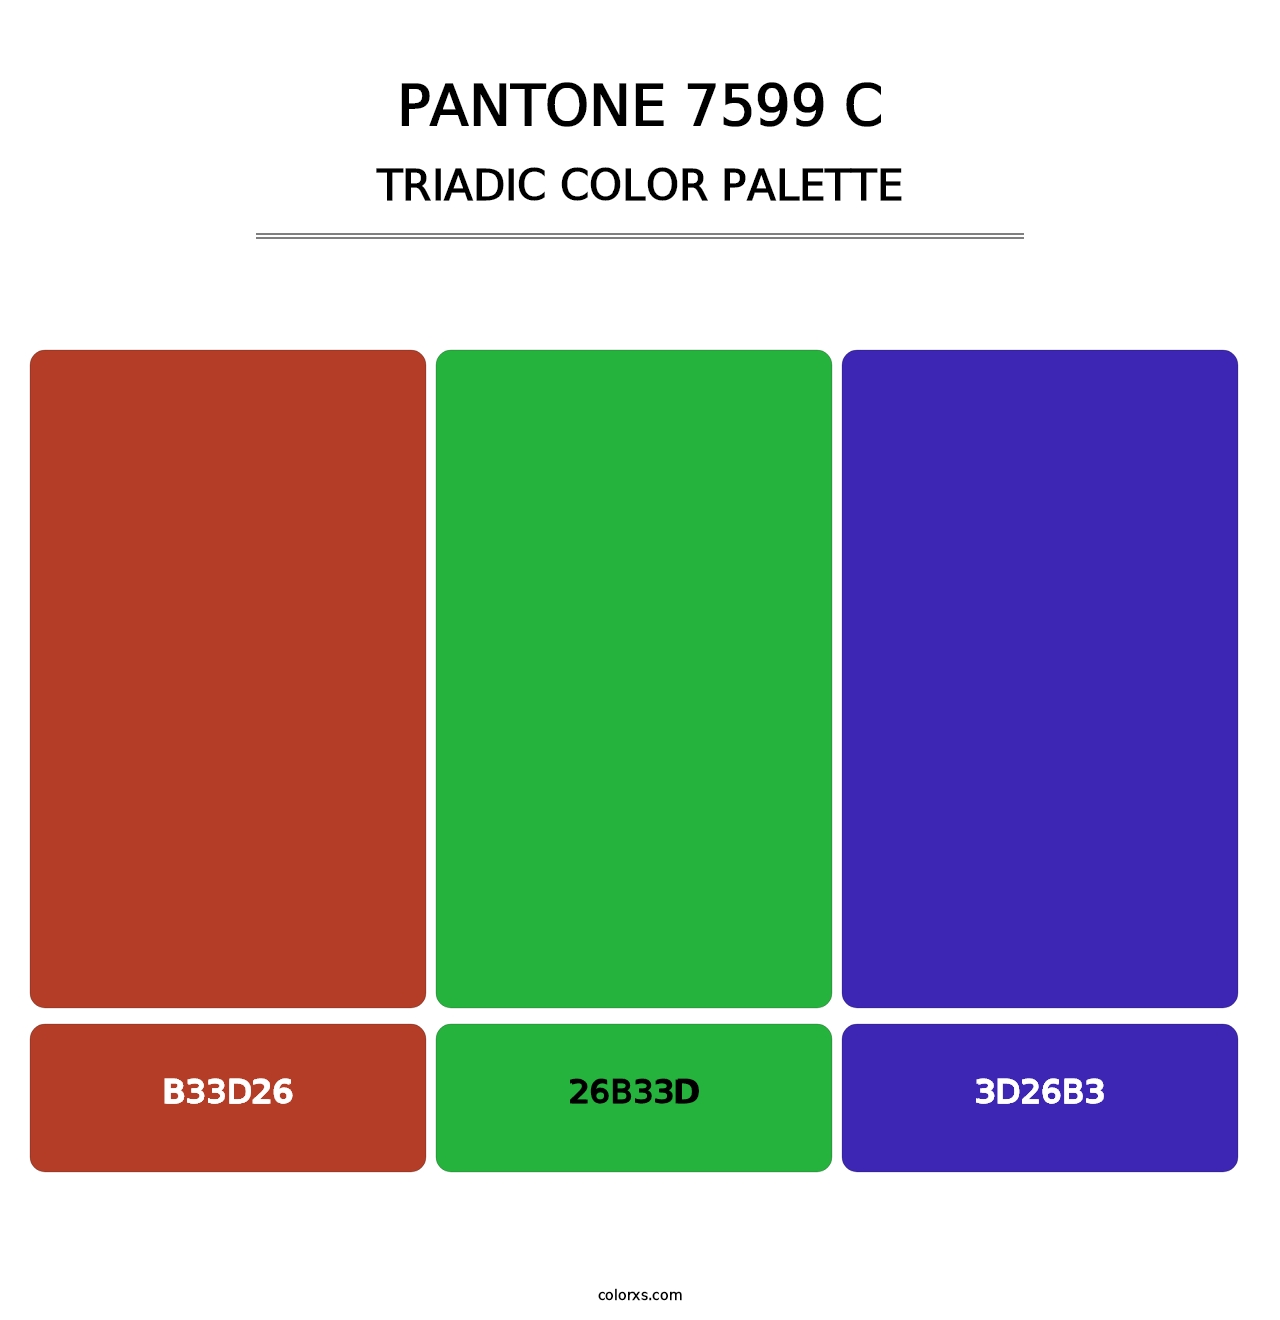 PANTONE 7599 C - Triadic Color Palette